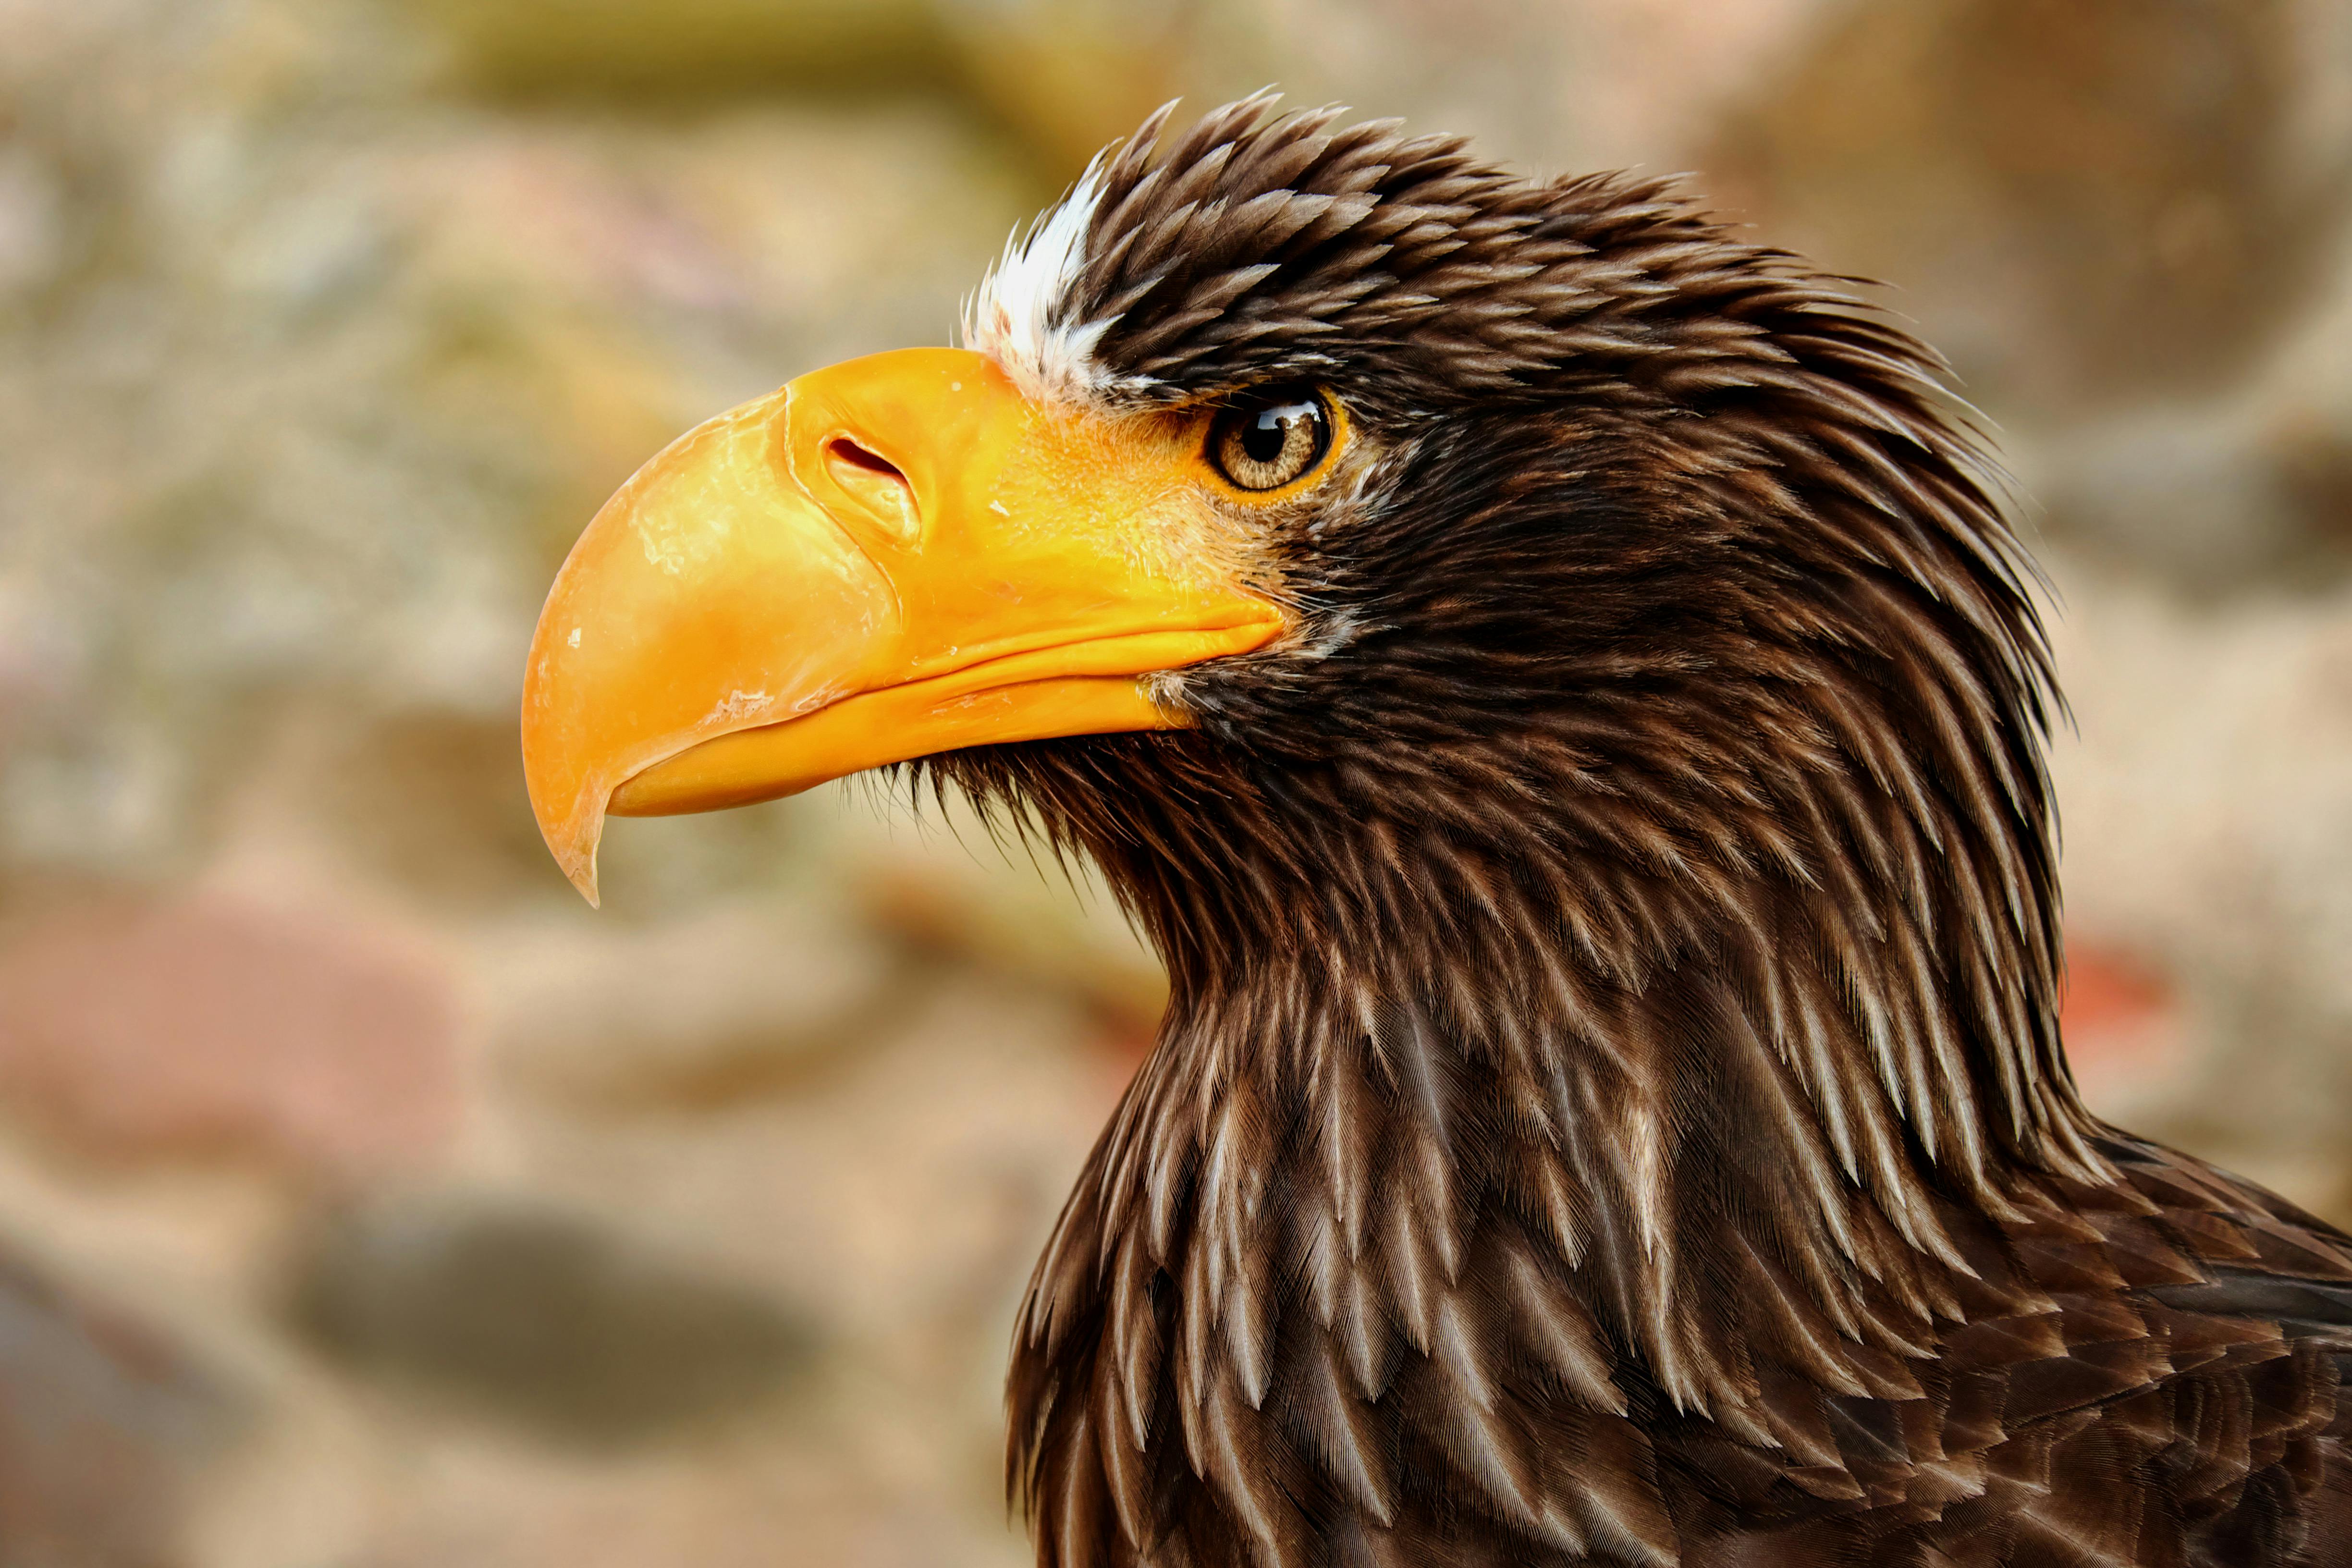 巨大なワシのアドラー鳥のクローズアップ写真 無料の写真素材